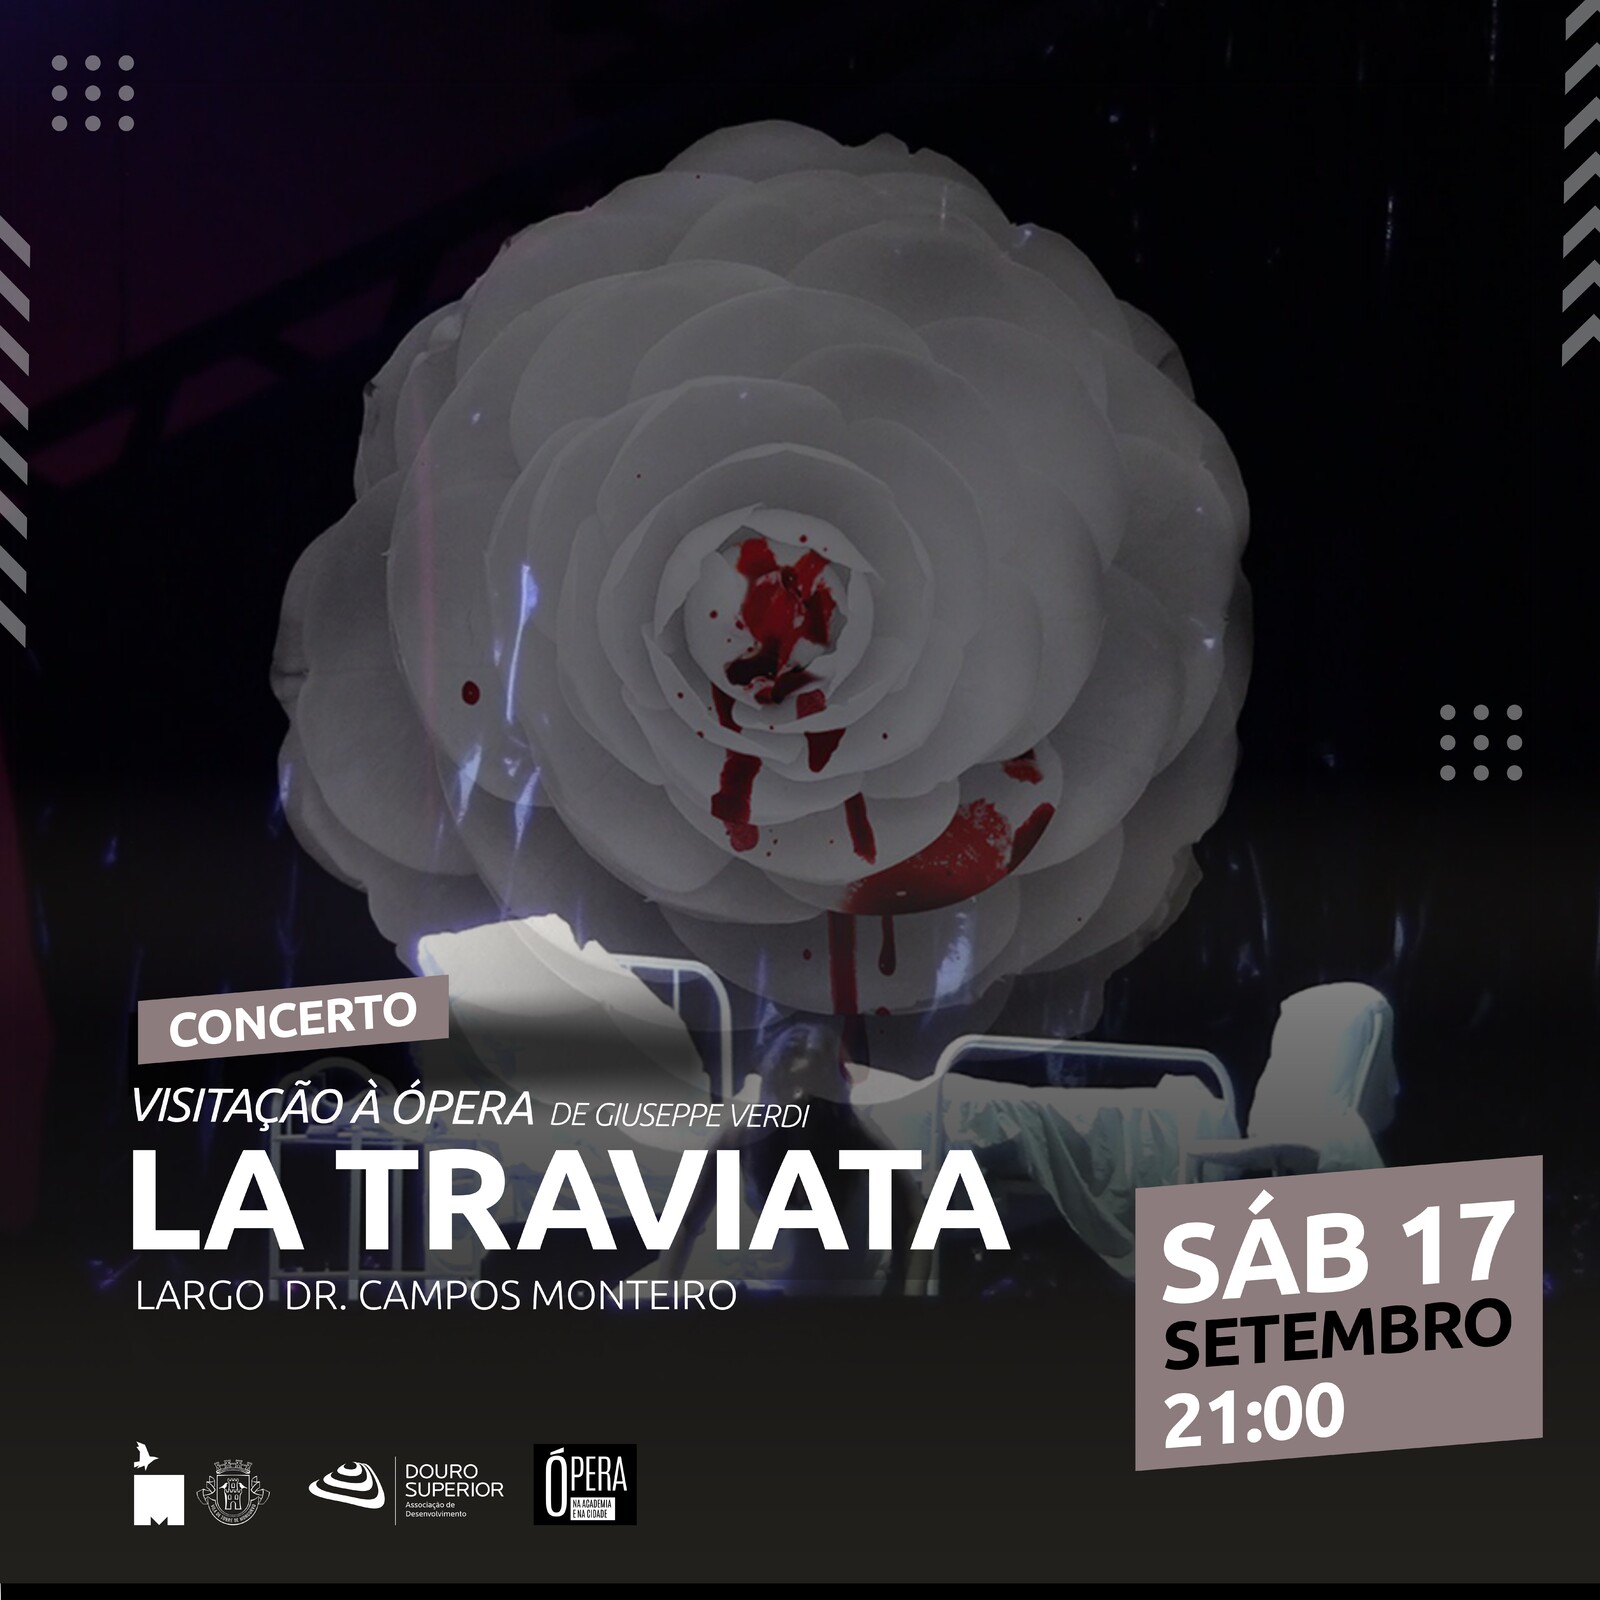 Concerto Visitação à Ópera “La Traviata” de Giuseppe Verdi